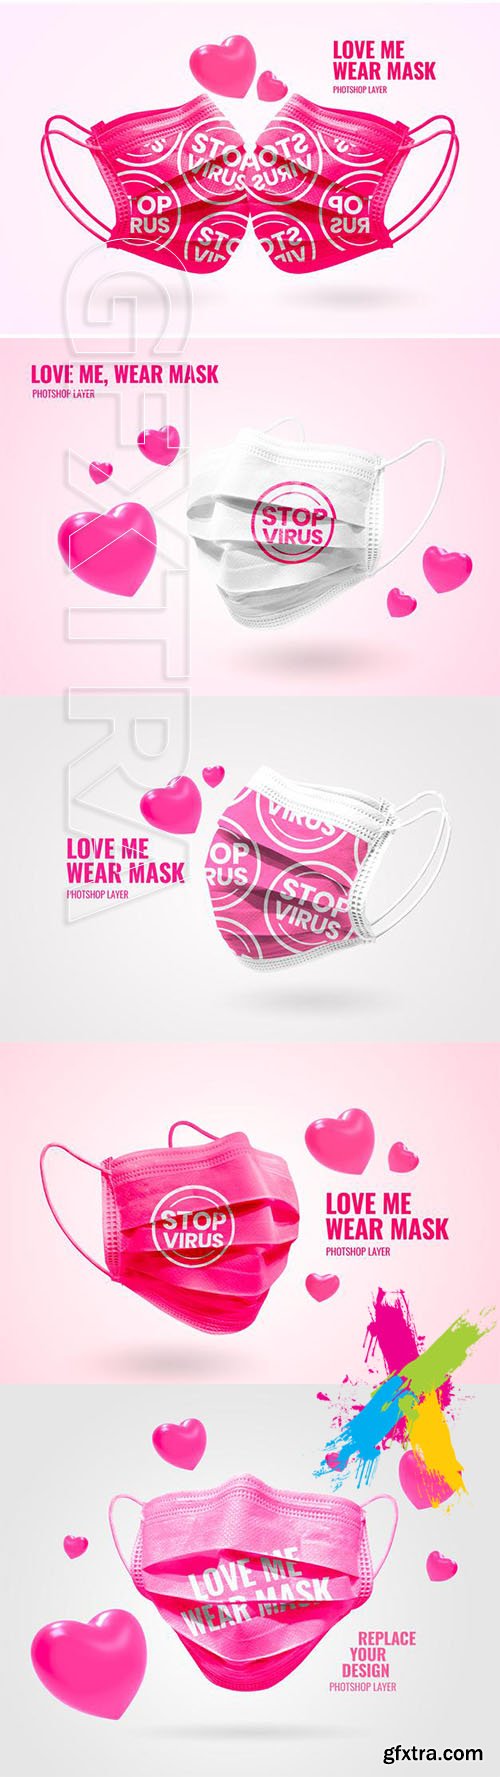 Mask valentine mockup